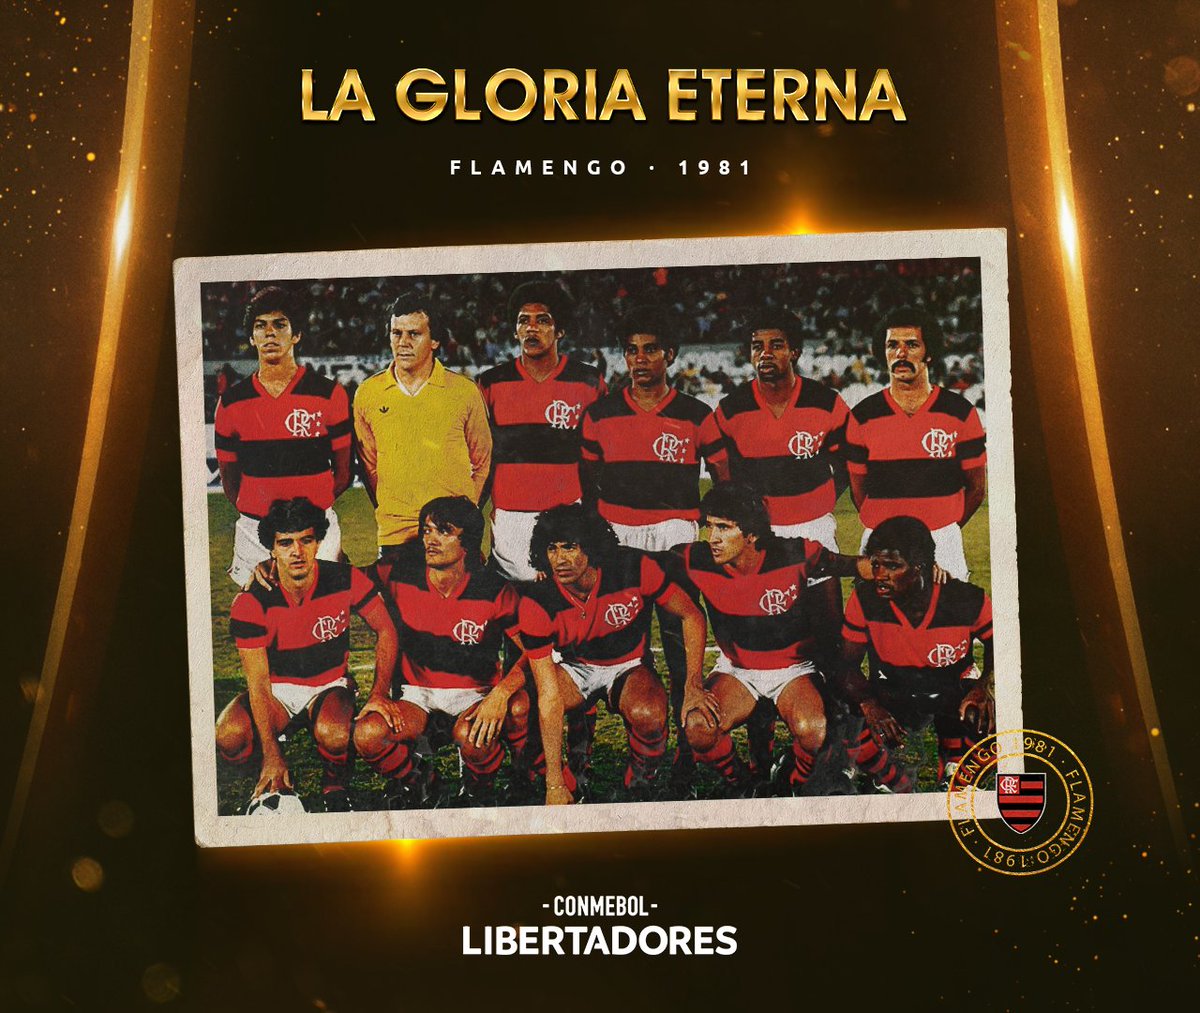 @Libertadores's photo on El 23